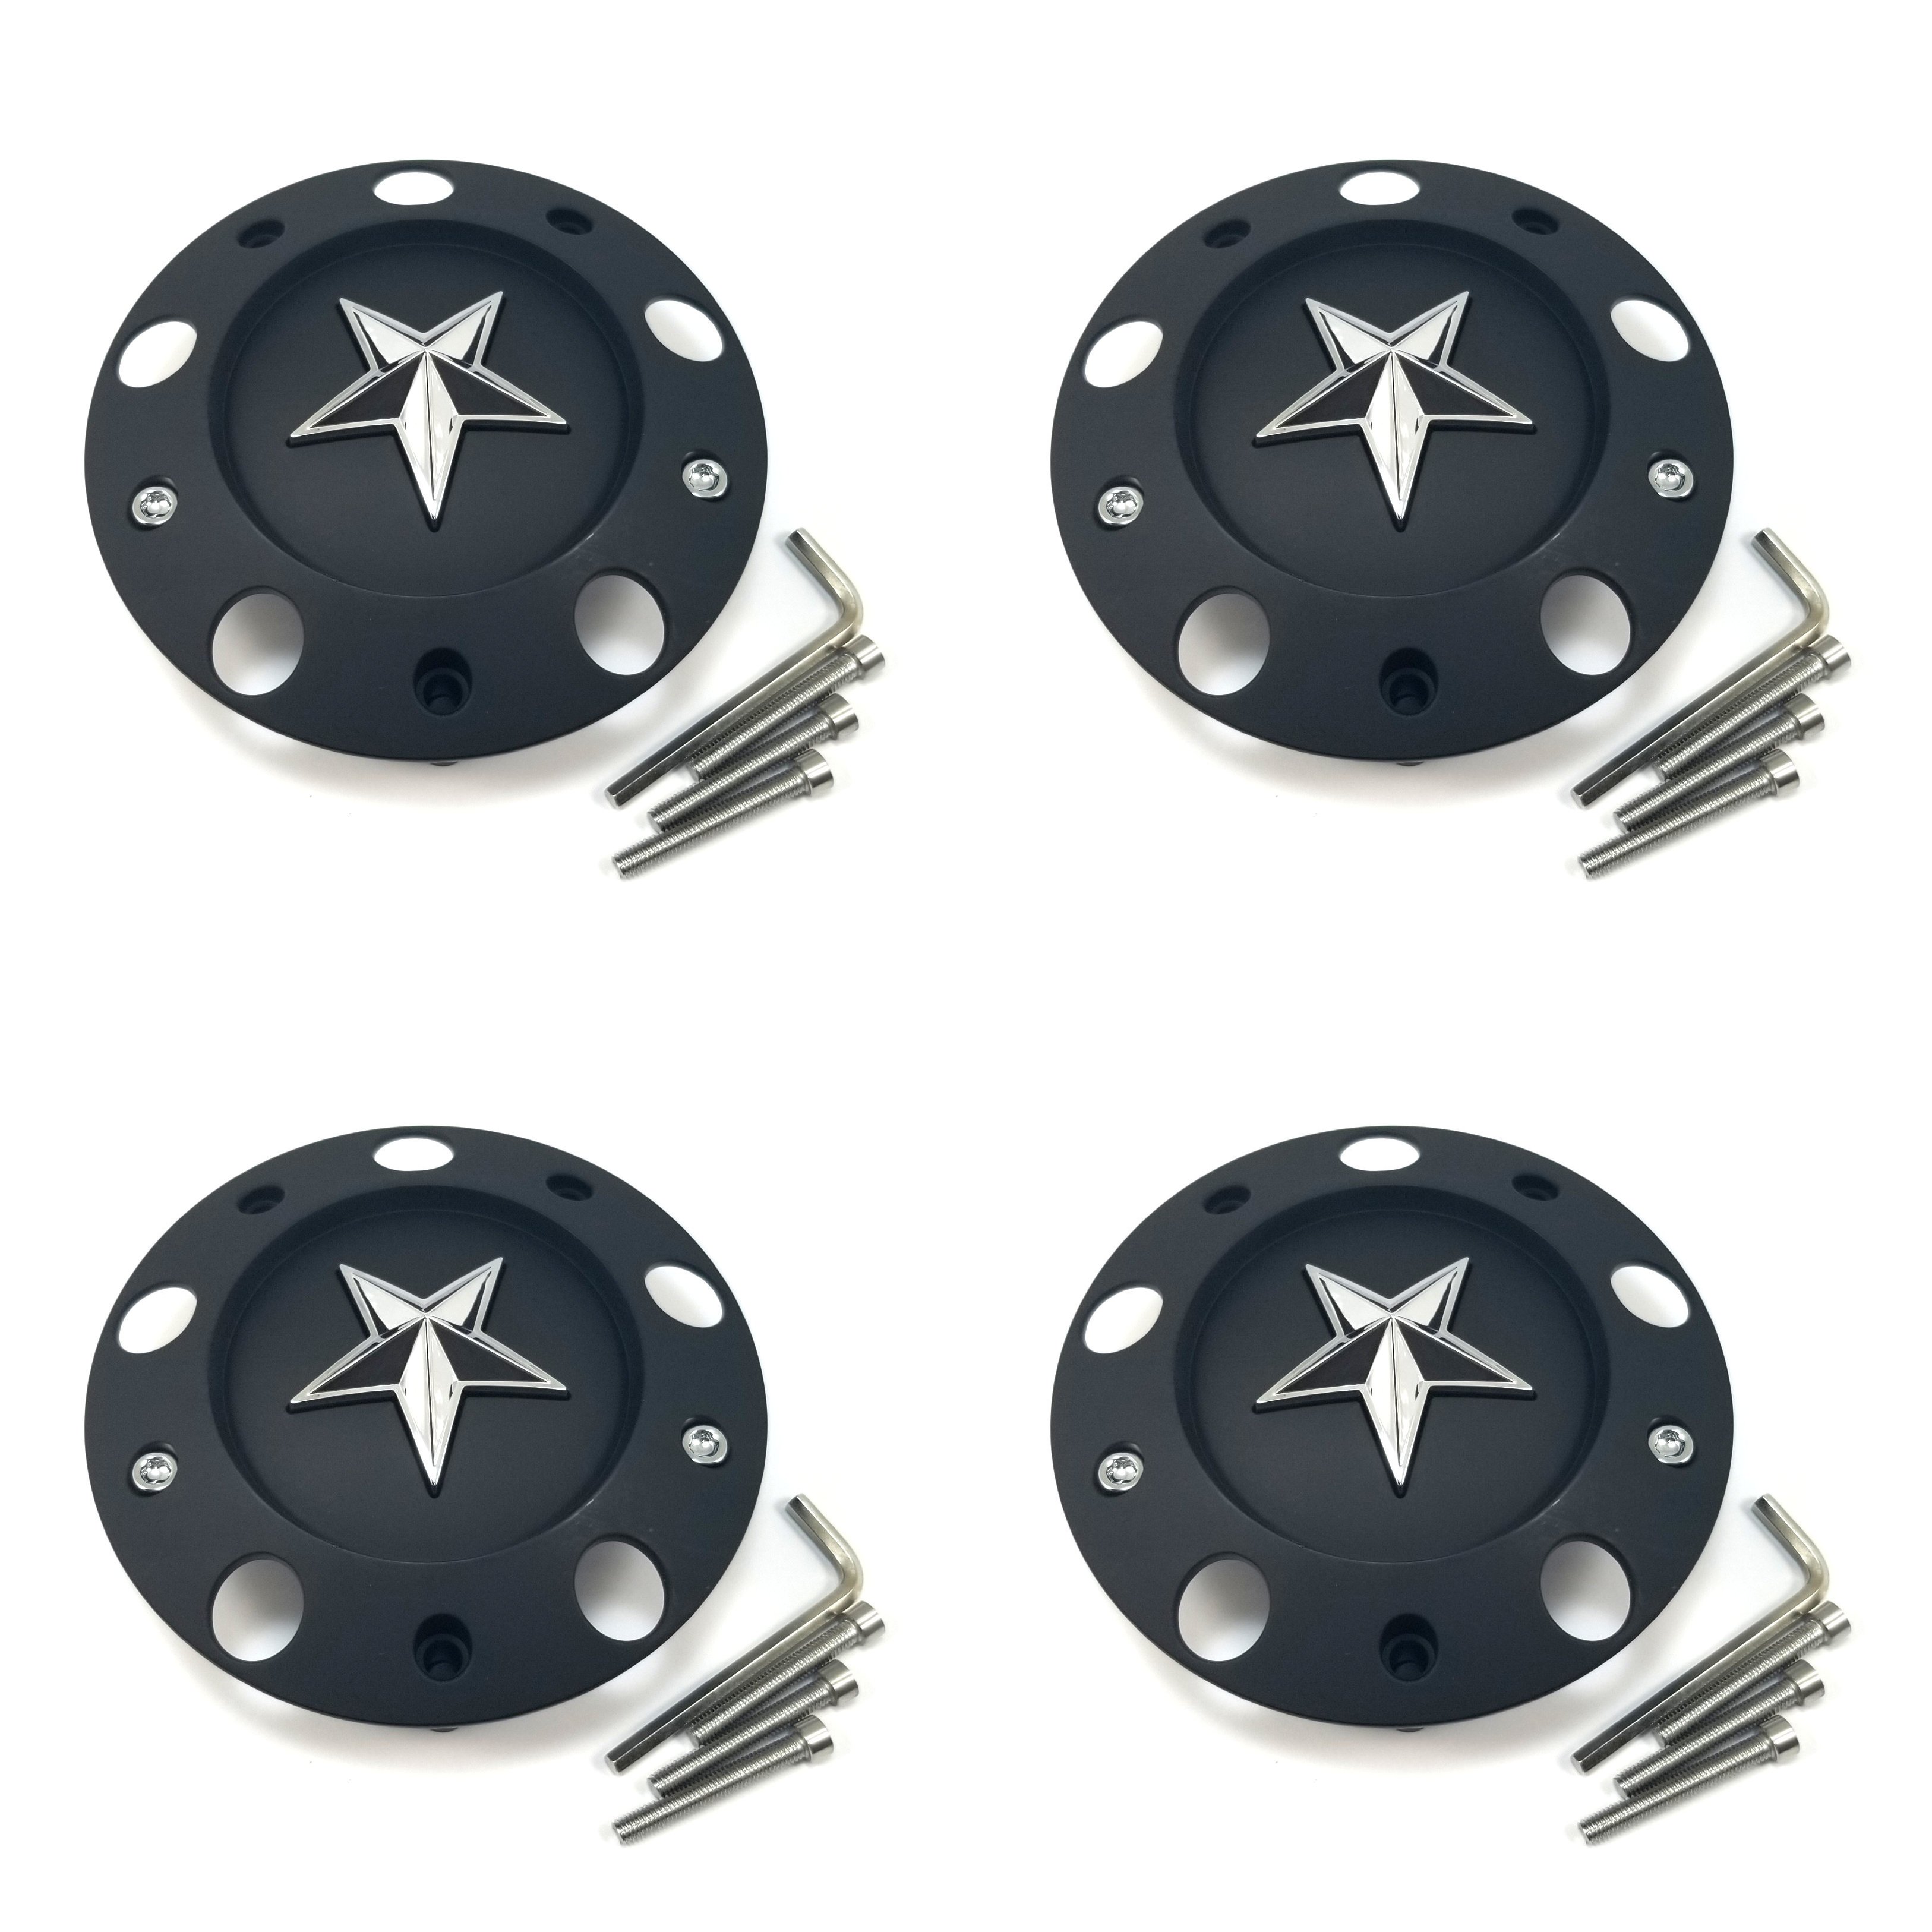 5 lug hubcaps